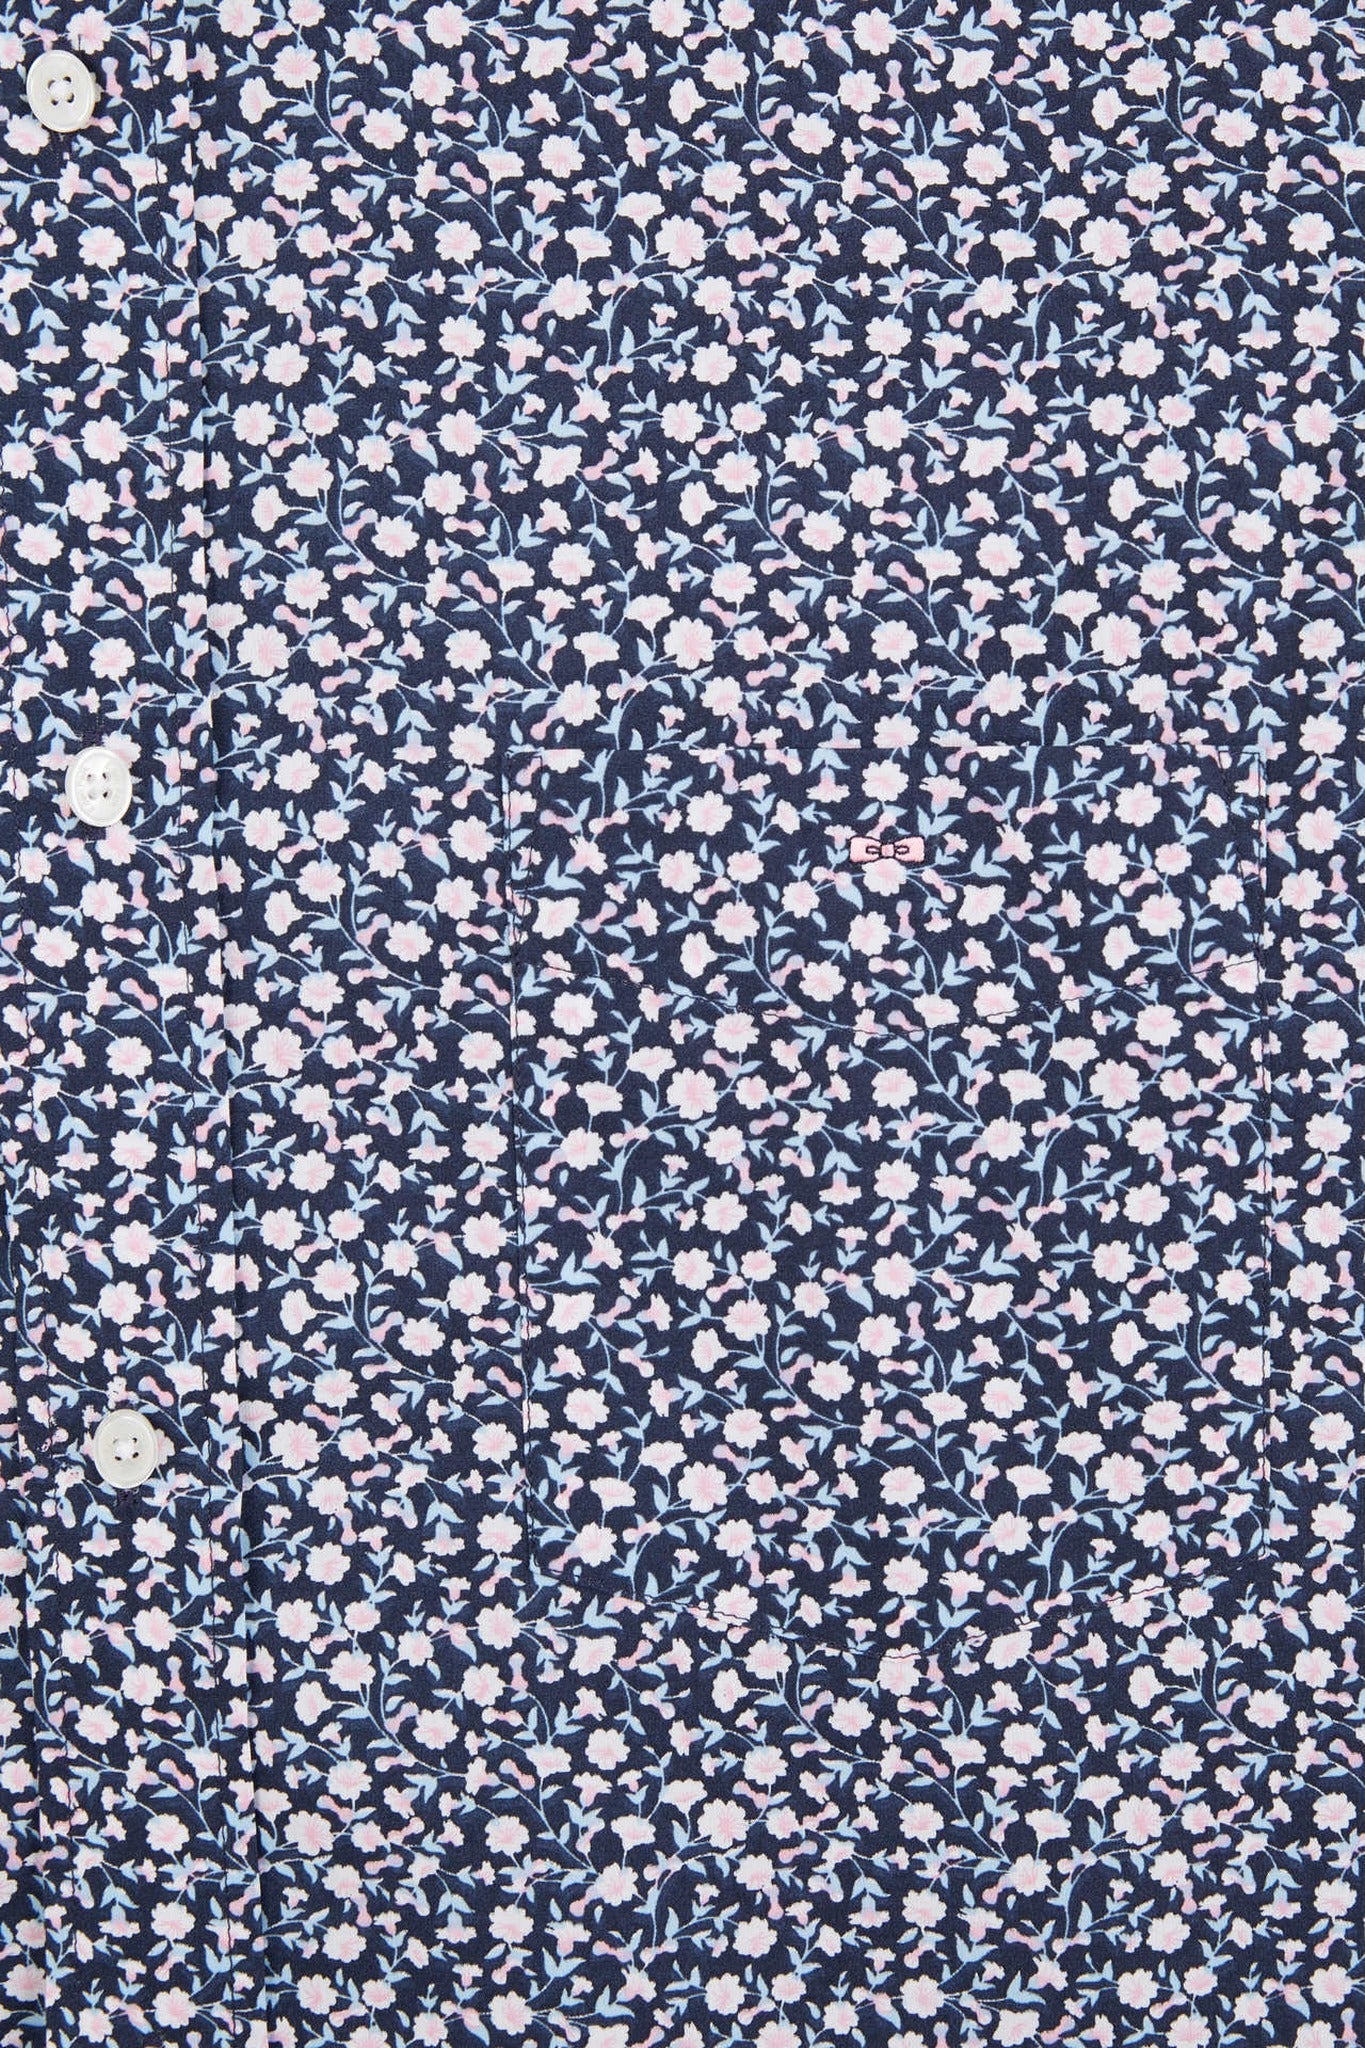 Chemisette bleu marine imprimée exclusif fleurs - Image 8